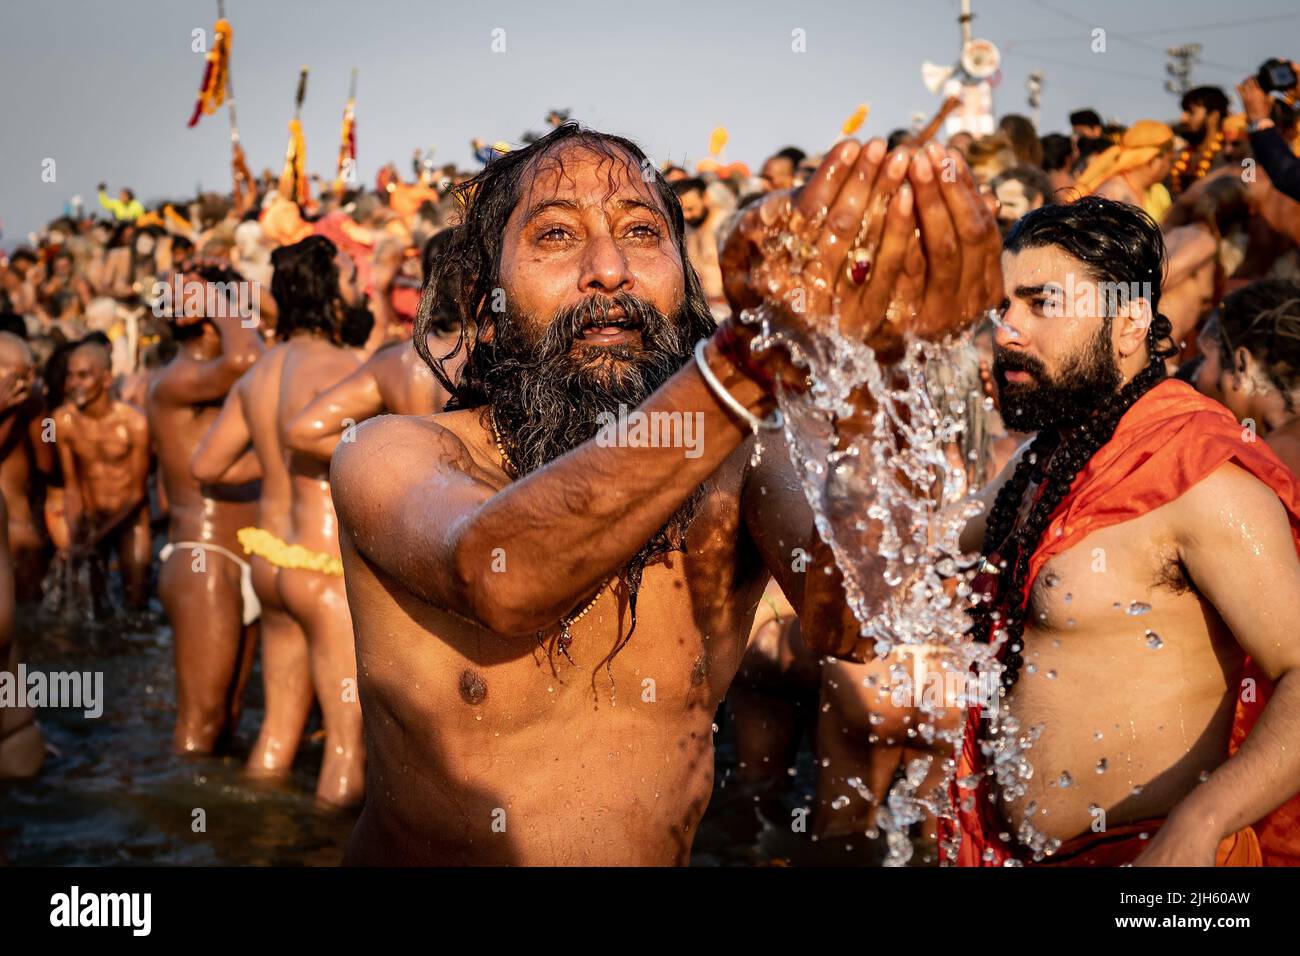 Un adorador hindú rezando y bañándose en el sagrado río Ganges con miles de otros devotos en el Festival Kumbh Mela en Allahabad, India. Foto de stock